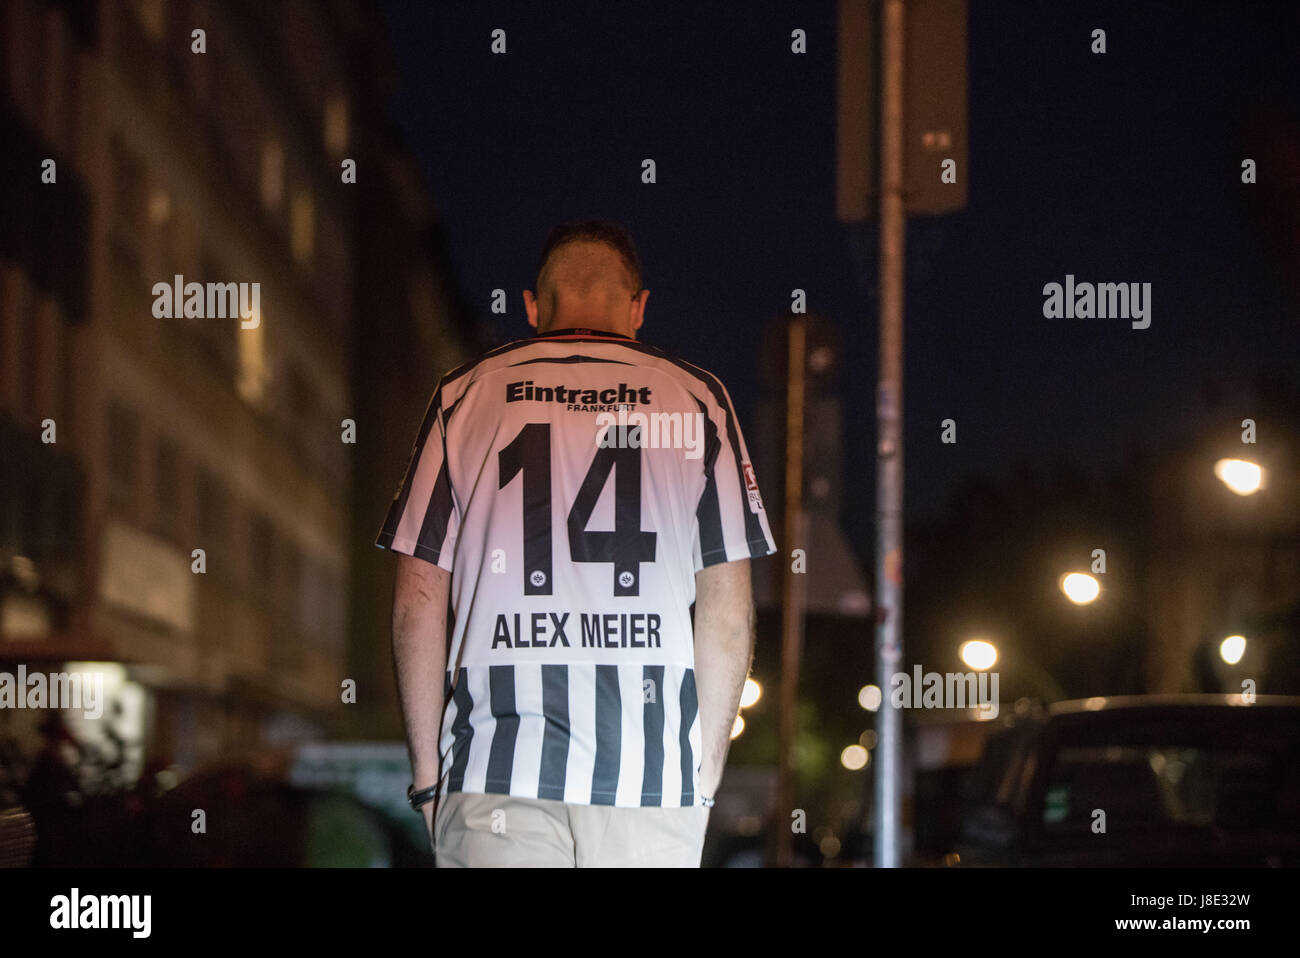 Ein Fan der deutschen Fußball-Club Eintrach Frankfurt trägt eine Trikot des  Frankfurter vorwärts Alex Meier, während zu Fuß nach Hause, nachdem gerade  das DFB-Pokal-Finale zwischen Borussia Dortmund und Eintracht Frankfurt in  einem